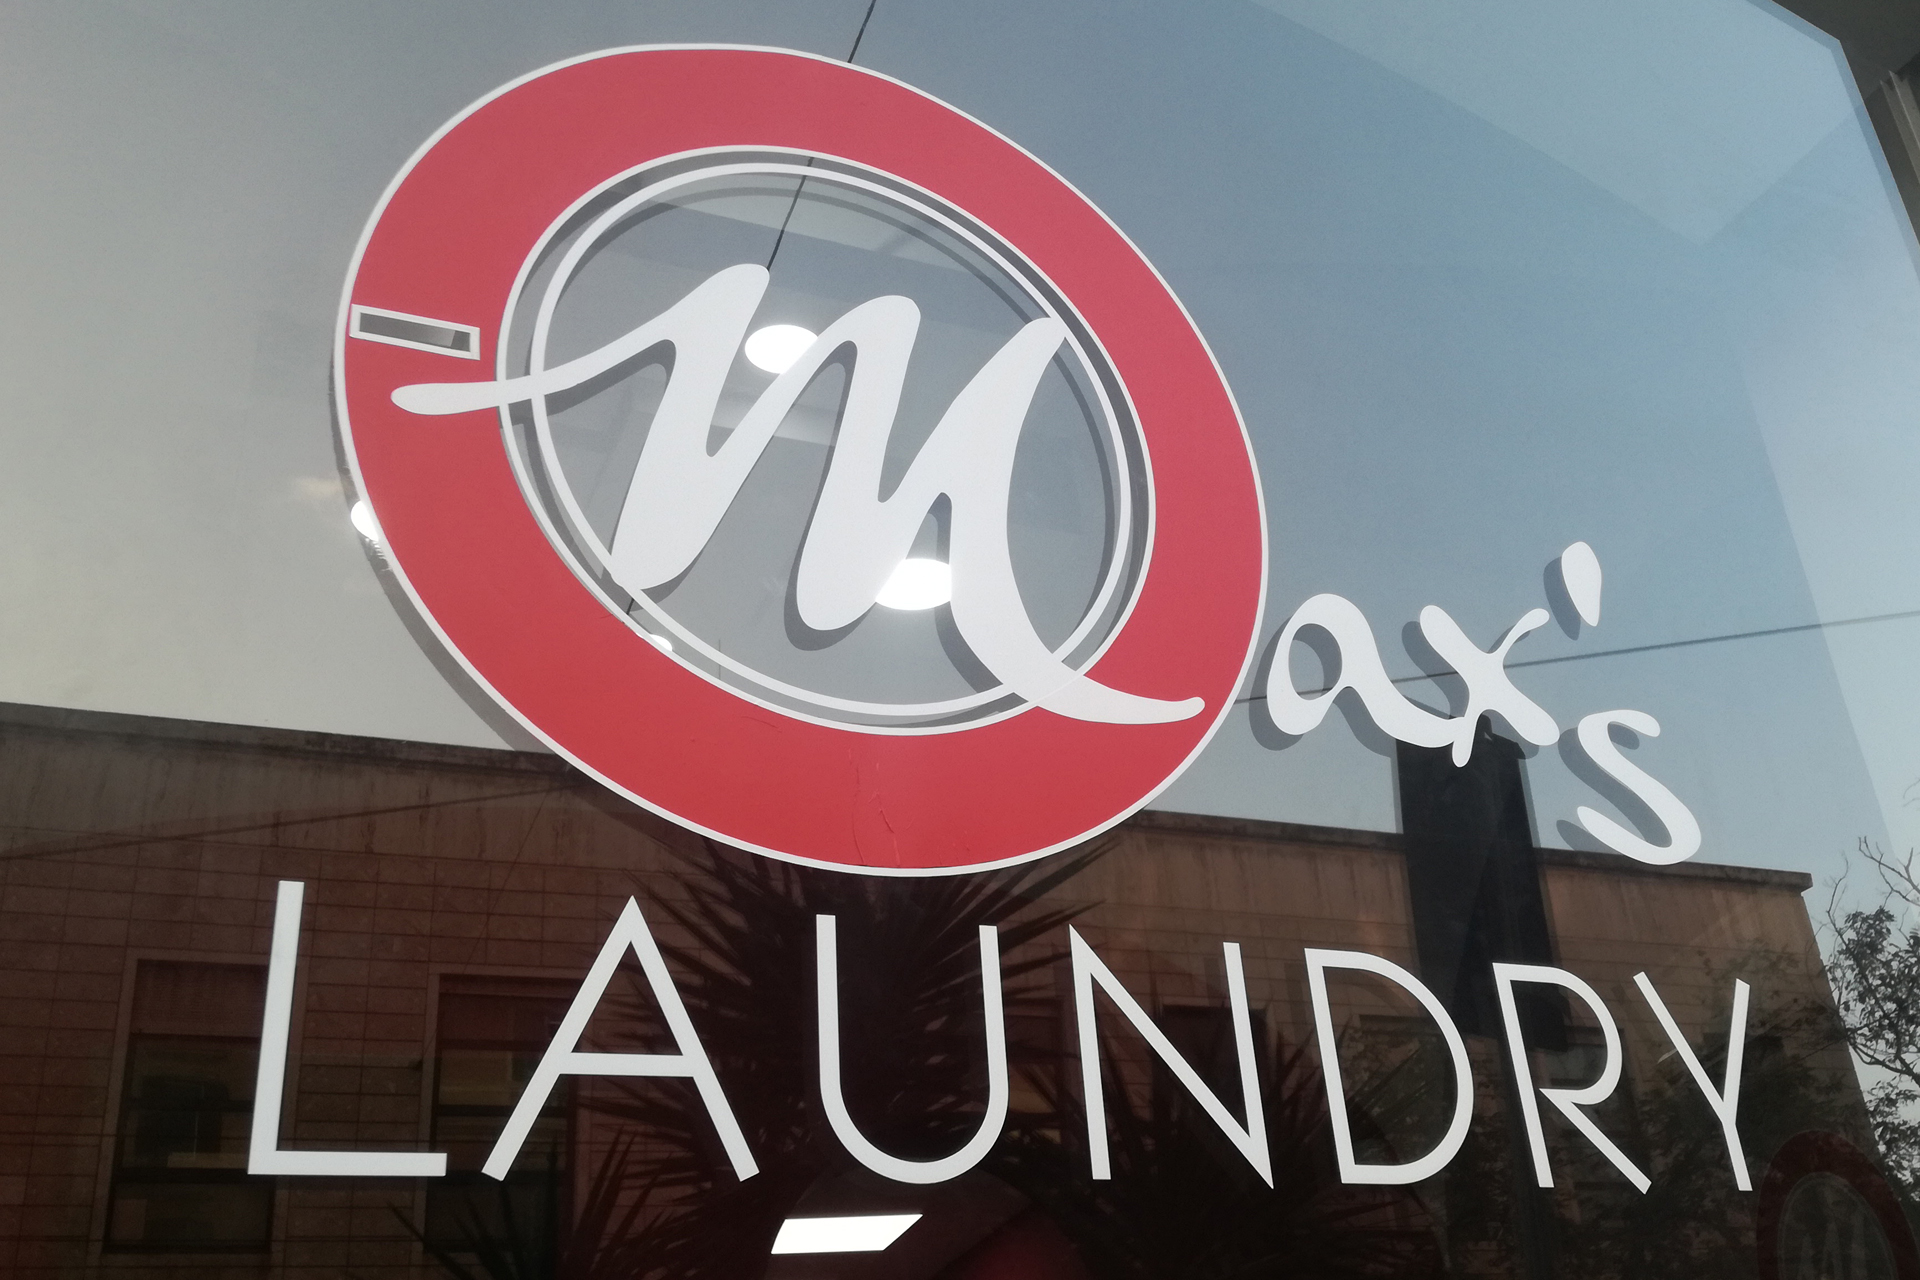 Max's Laundry